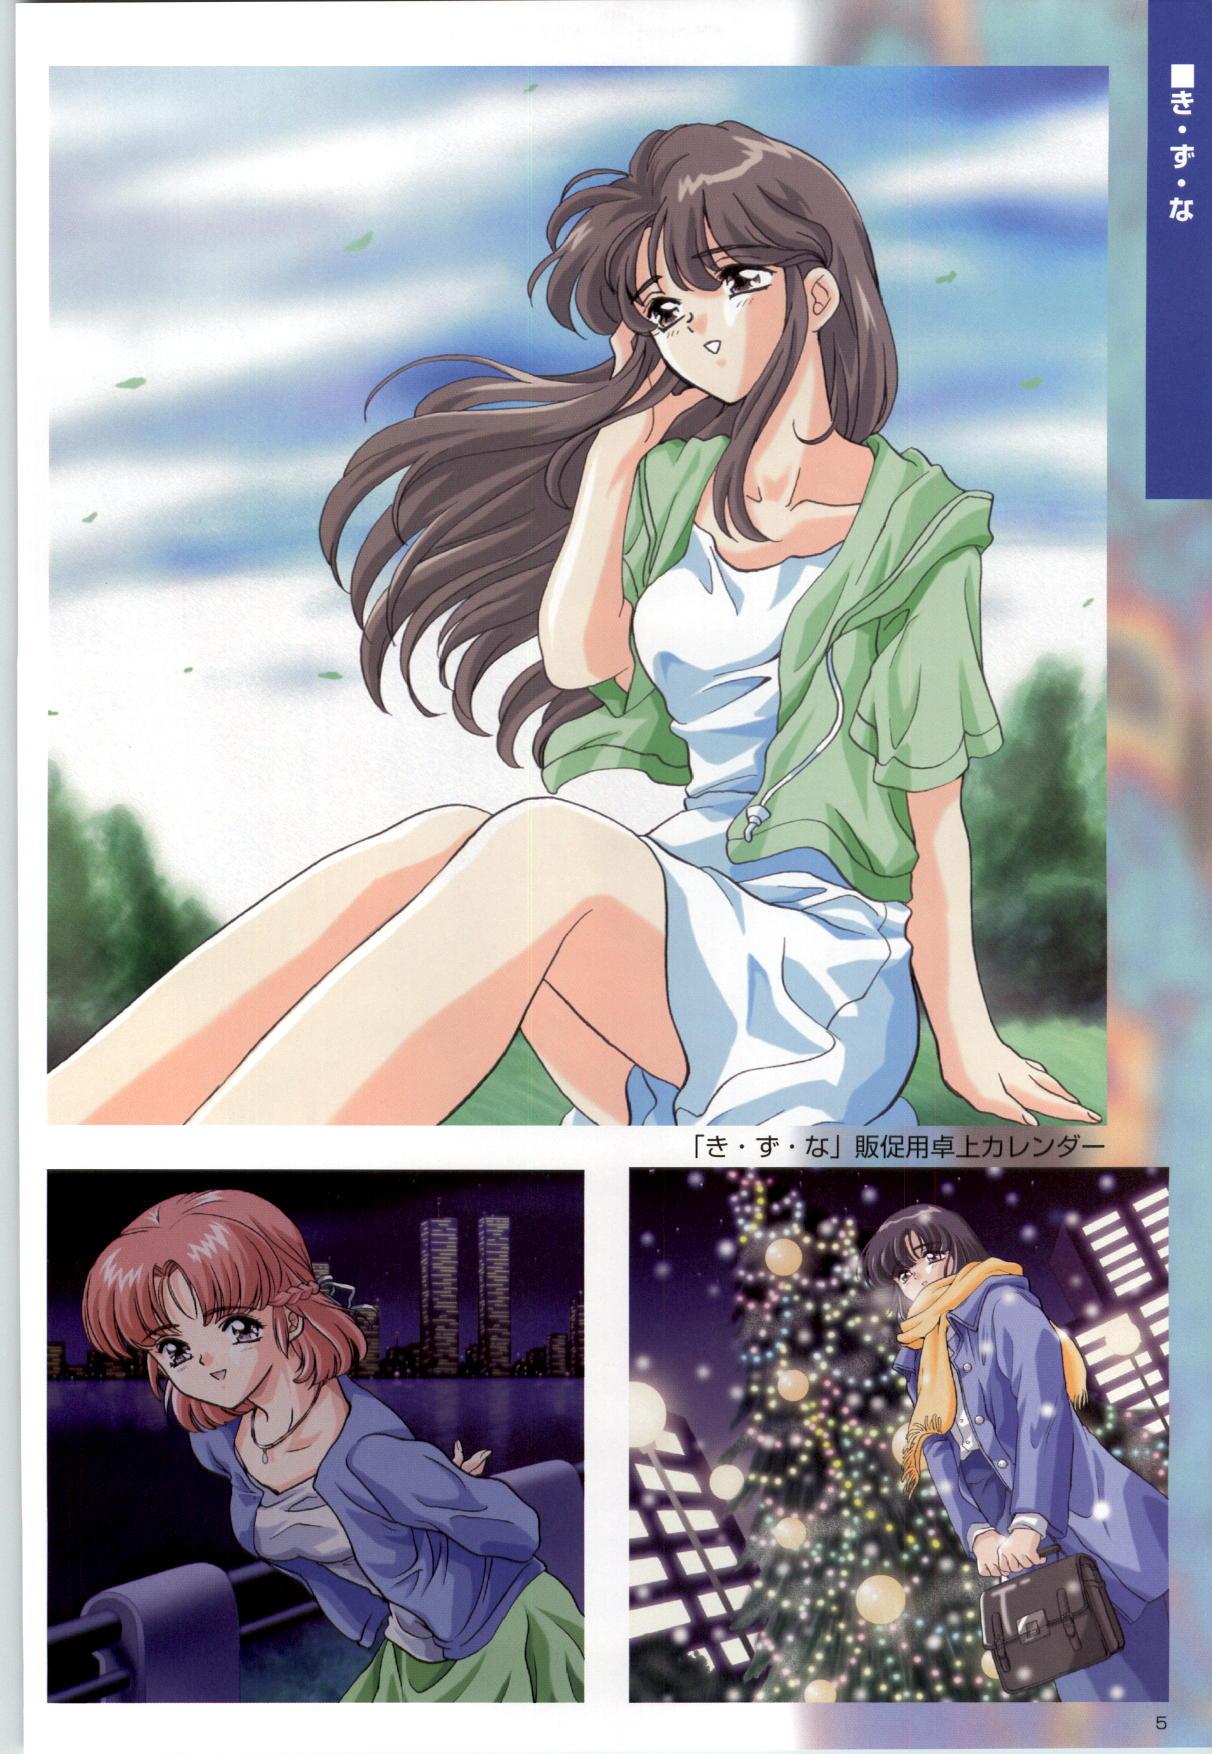 [Kinmedai Pink] ACTRESS Collection Kizuna + Seduce ~Yuuwaku~ + Hoshi no Pierce Computer Graphics & Original Pictures 5